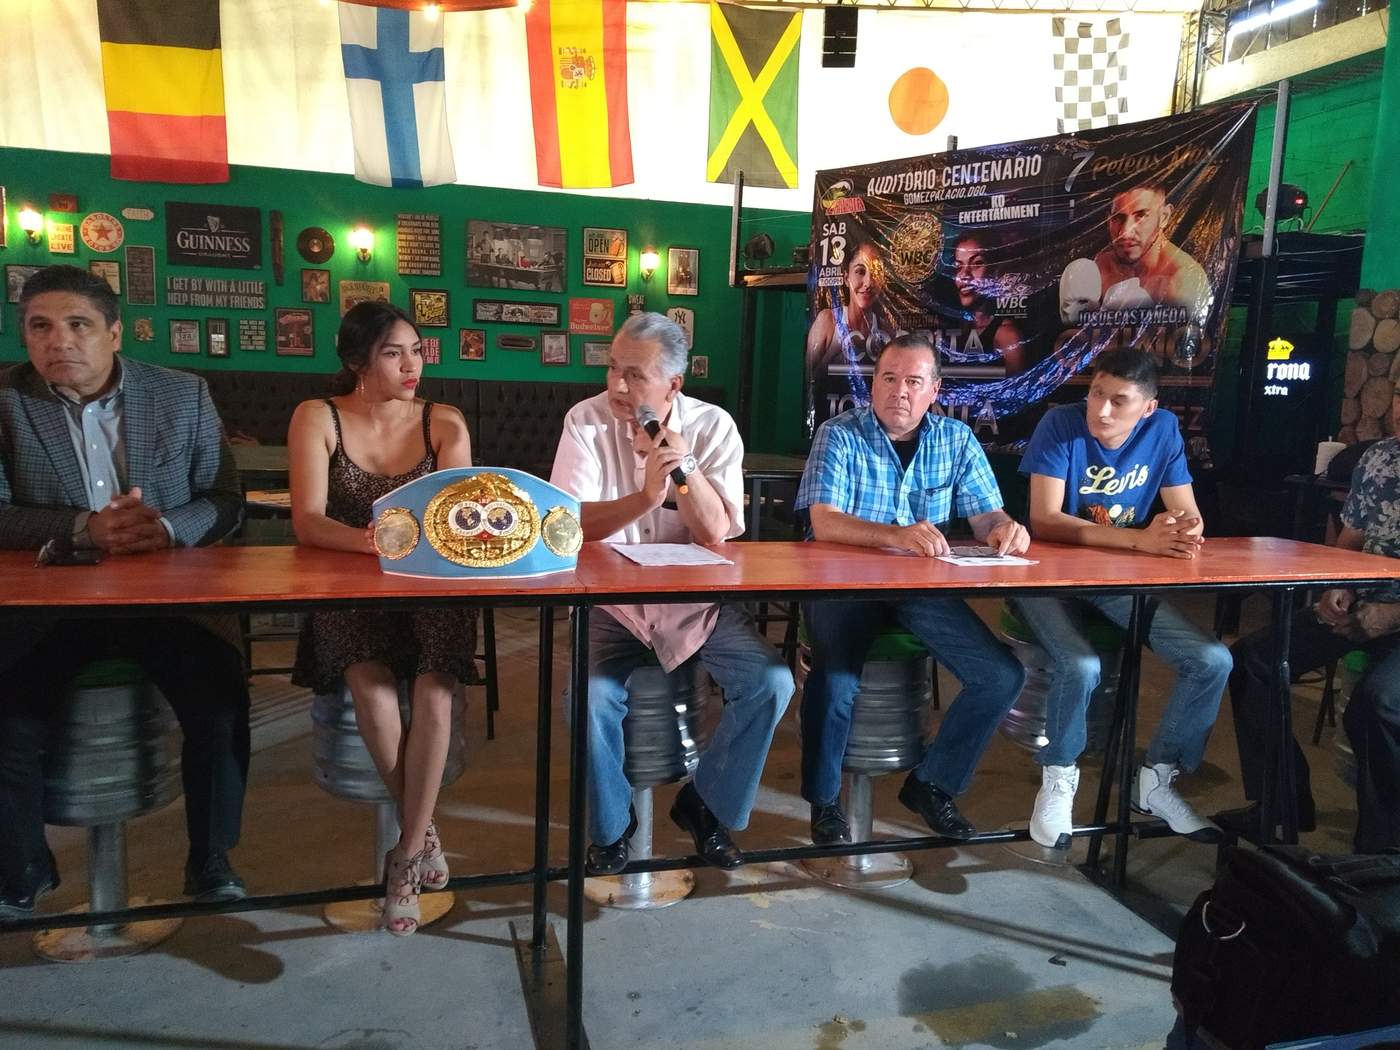 Habrá box profesional en Gómez Palacio